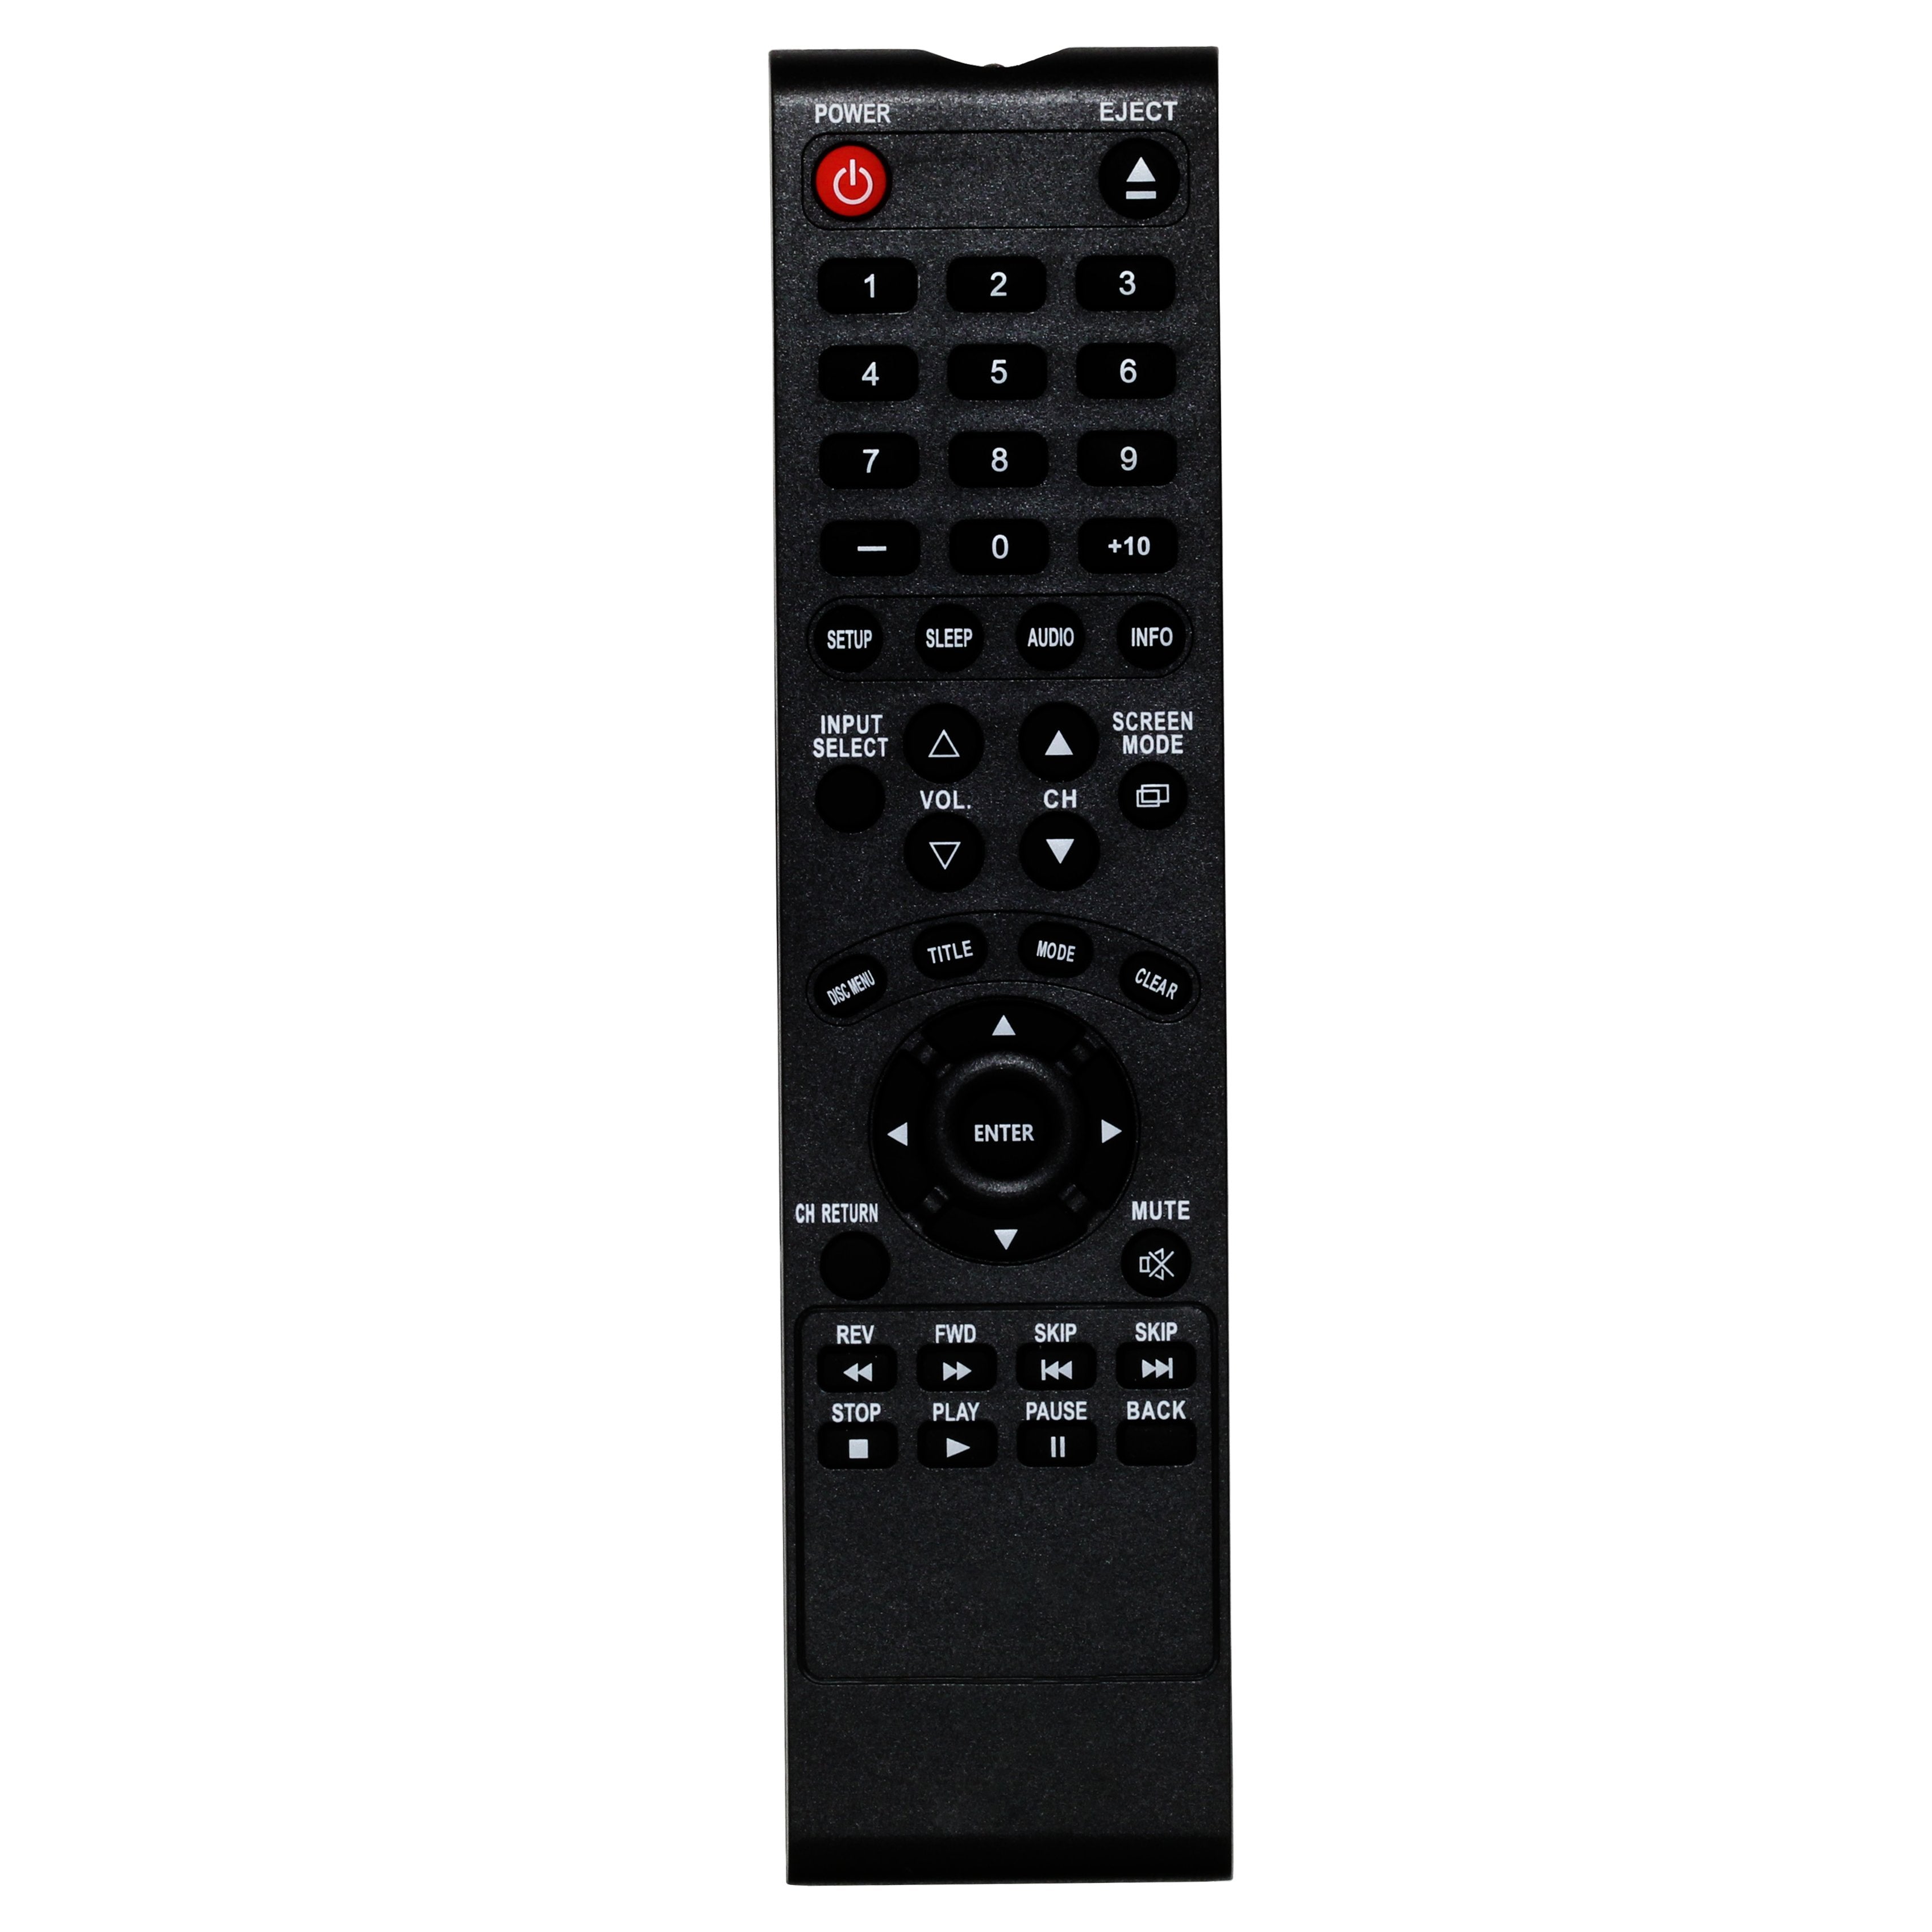 Sylvania RLX310WA03  TV Remote